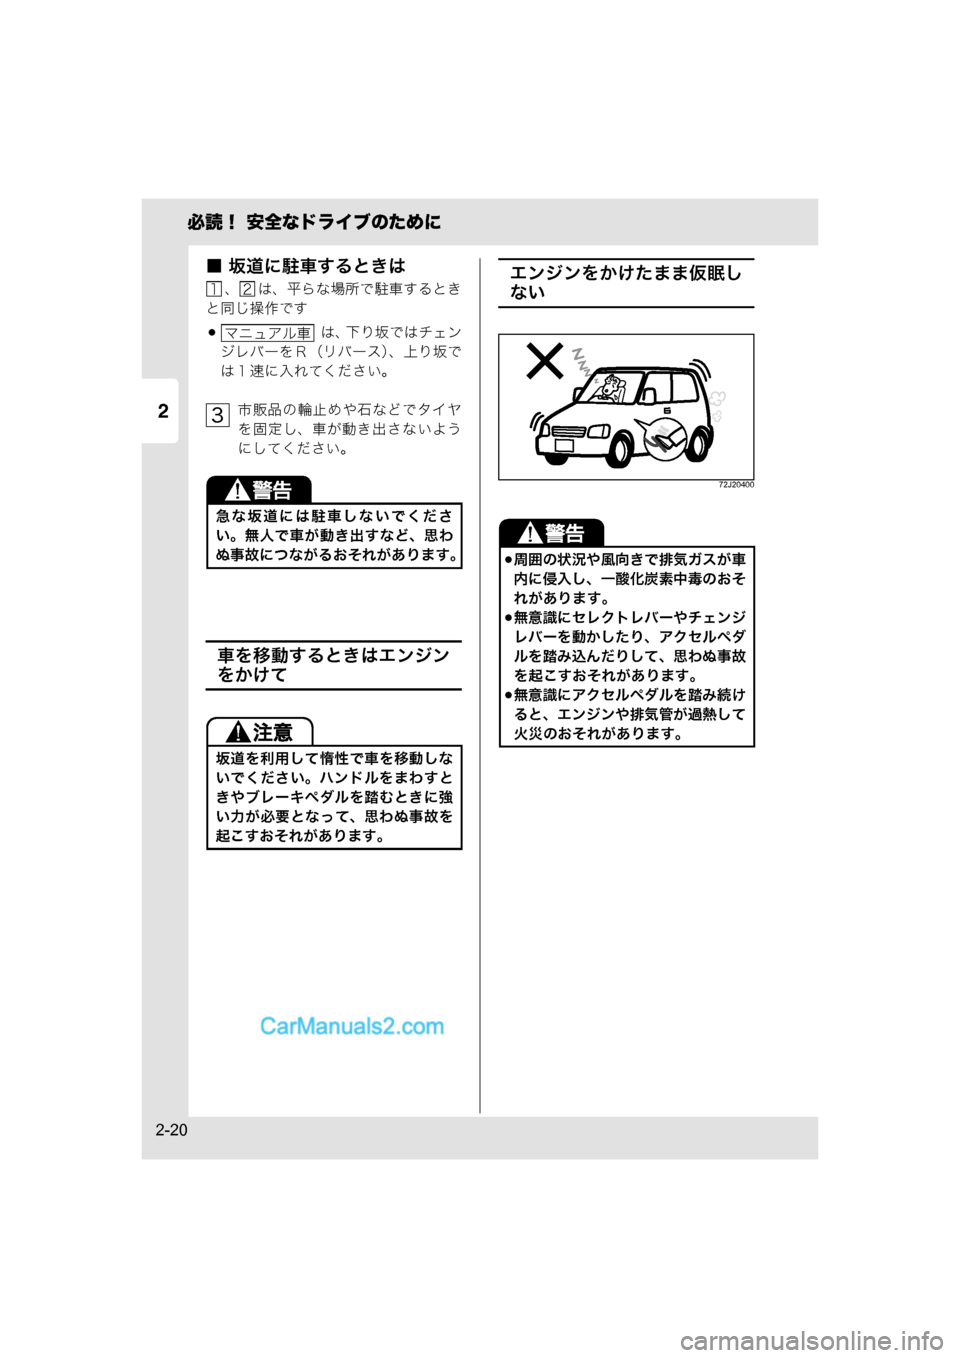 MAZDA MODEL CARROL 2015  取扱説明書 (キャロル) (in Japanese) 2
必読！ 安全なドライブのために
2-20
■ 坂道に駐車するときは
、 は、平らな場所で駐車するとき
と同じ操作です
 は、 下り坂ではチェン
ジレバ